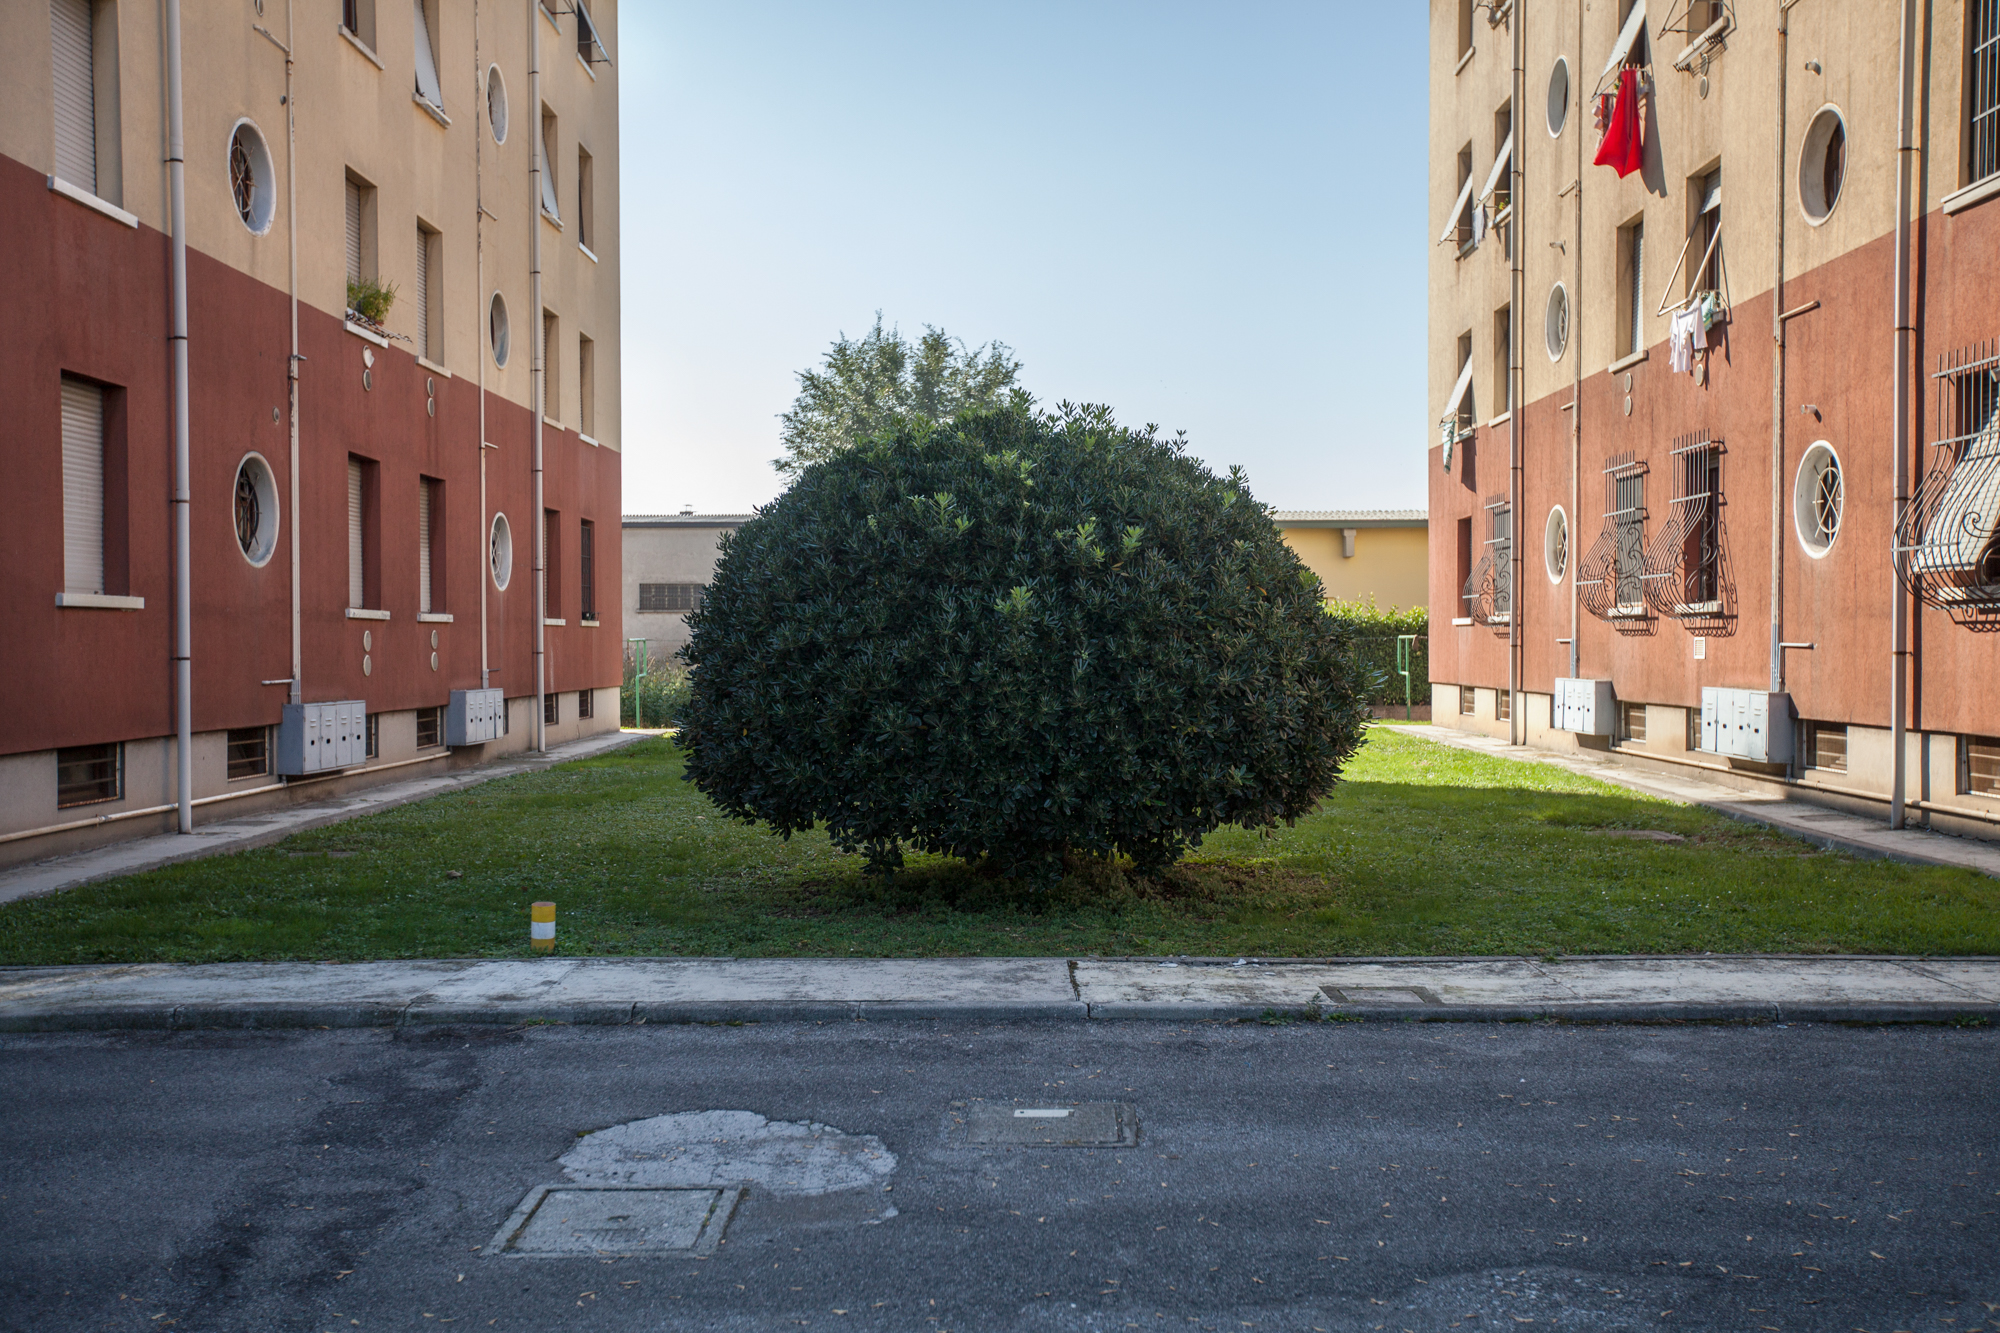  Le case popolari di proprietà della Caffaro. Brescia / Italia. Ottobre 2013 